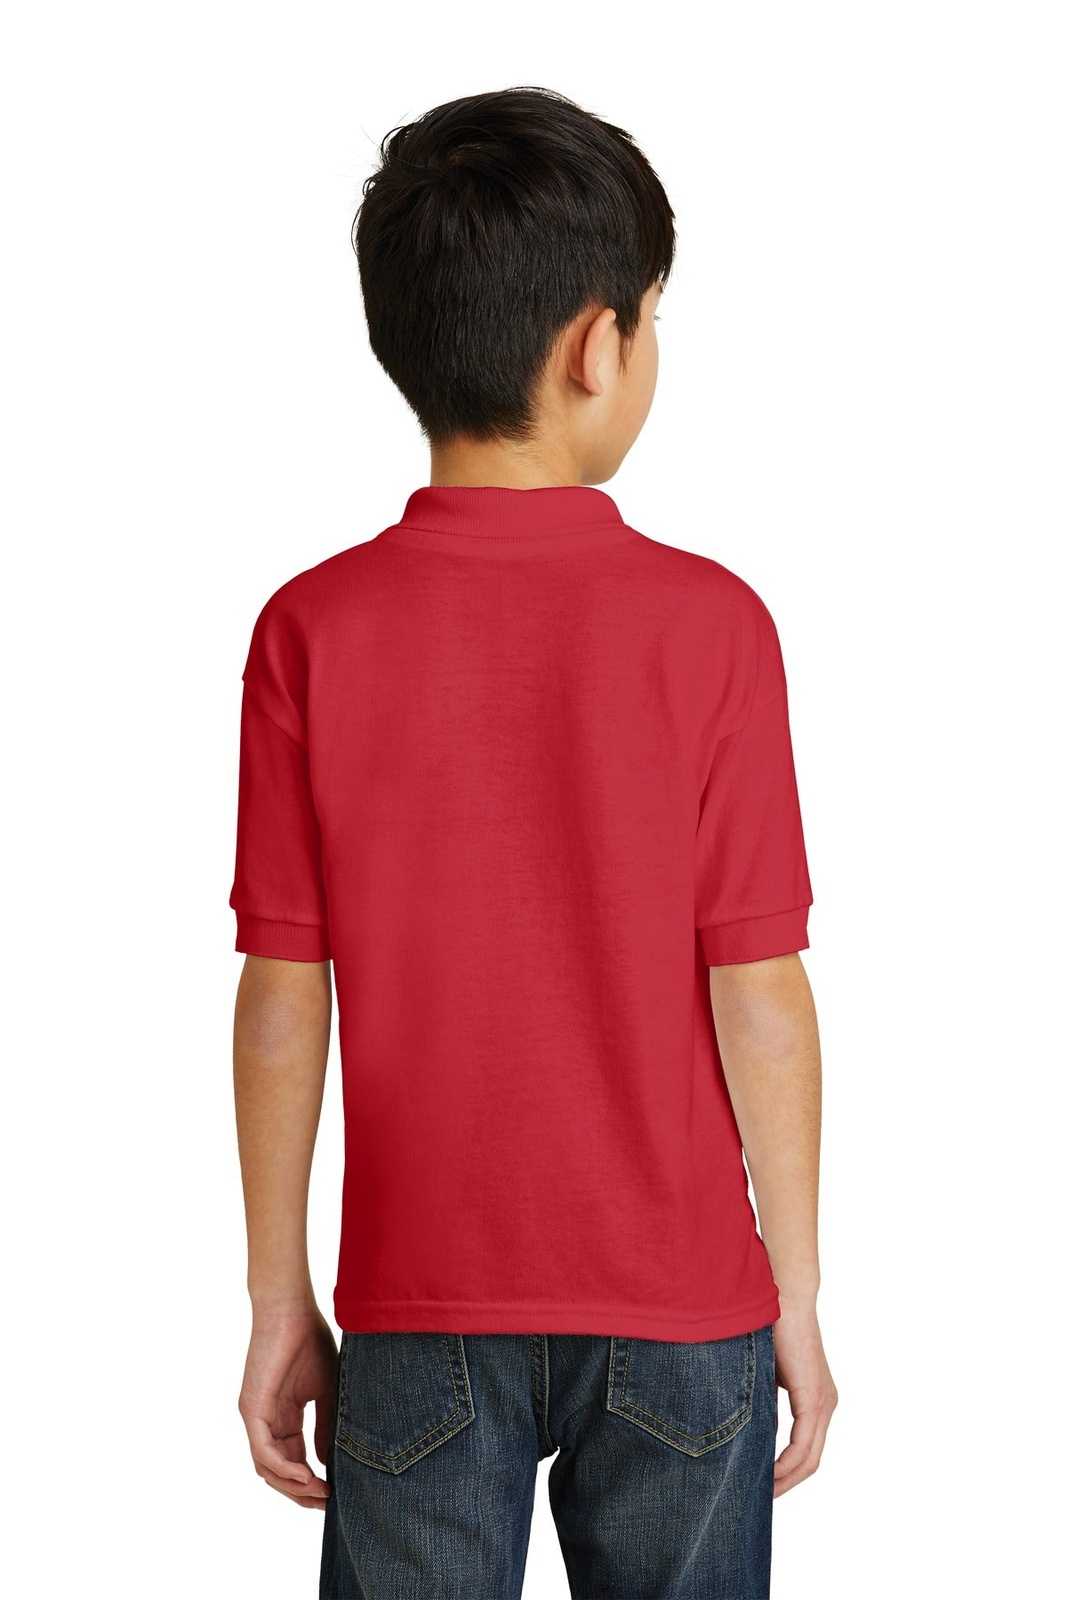 Gildan 8800B Youth Dryblend 6-Ounce Jersey Knit Sport Shirt - Red - HIT a Double